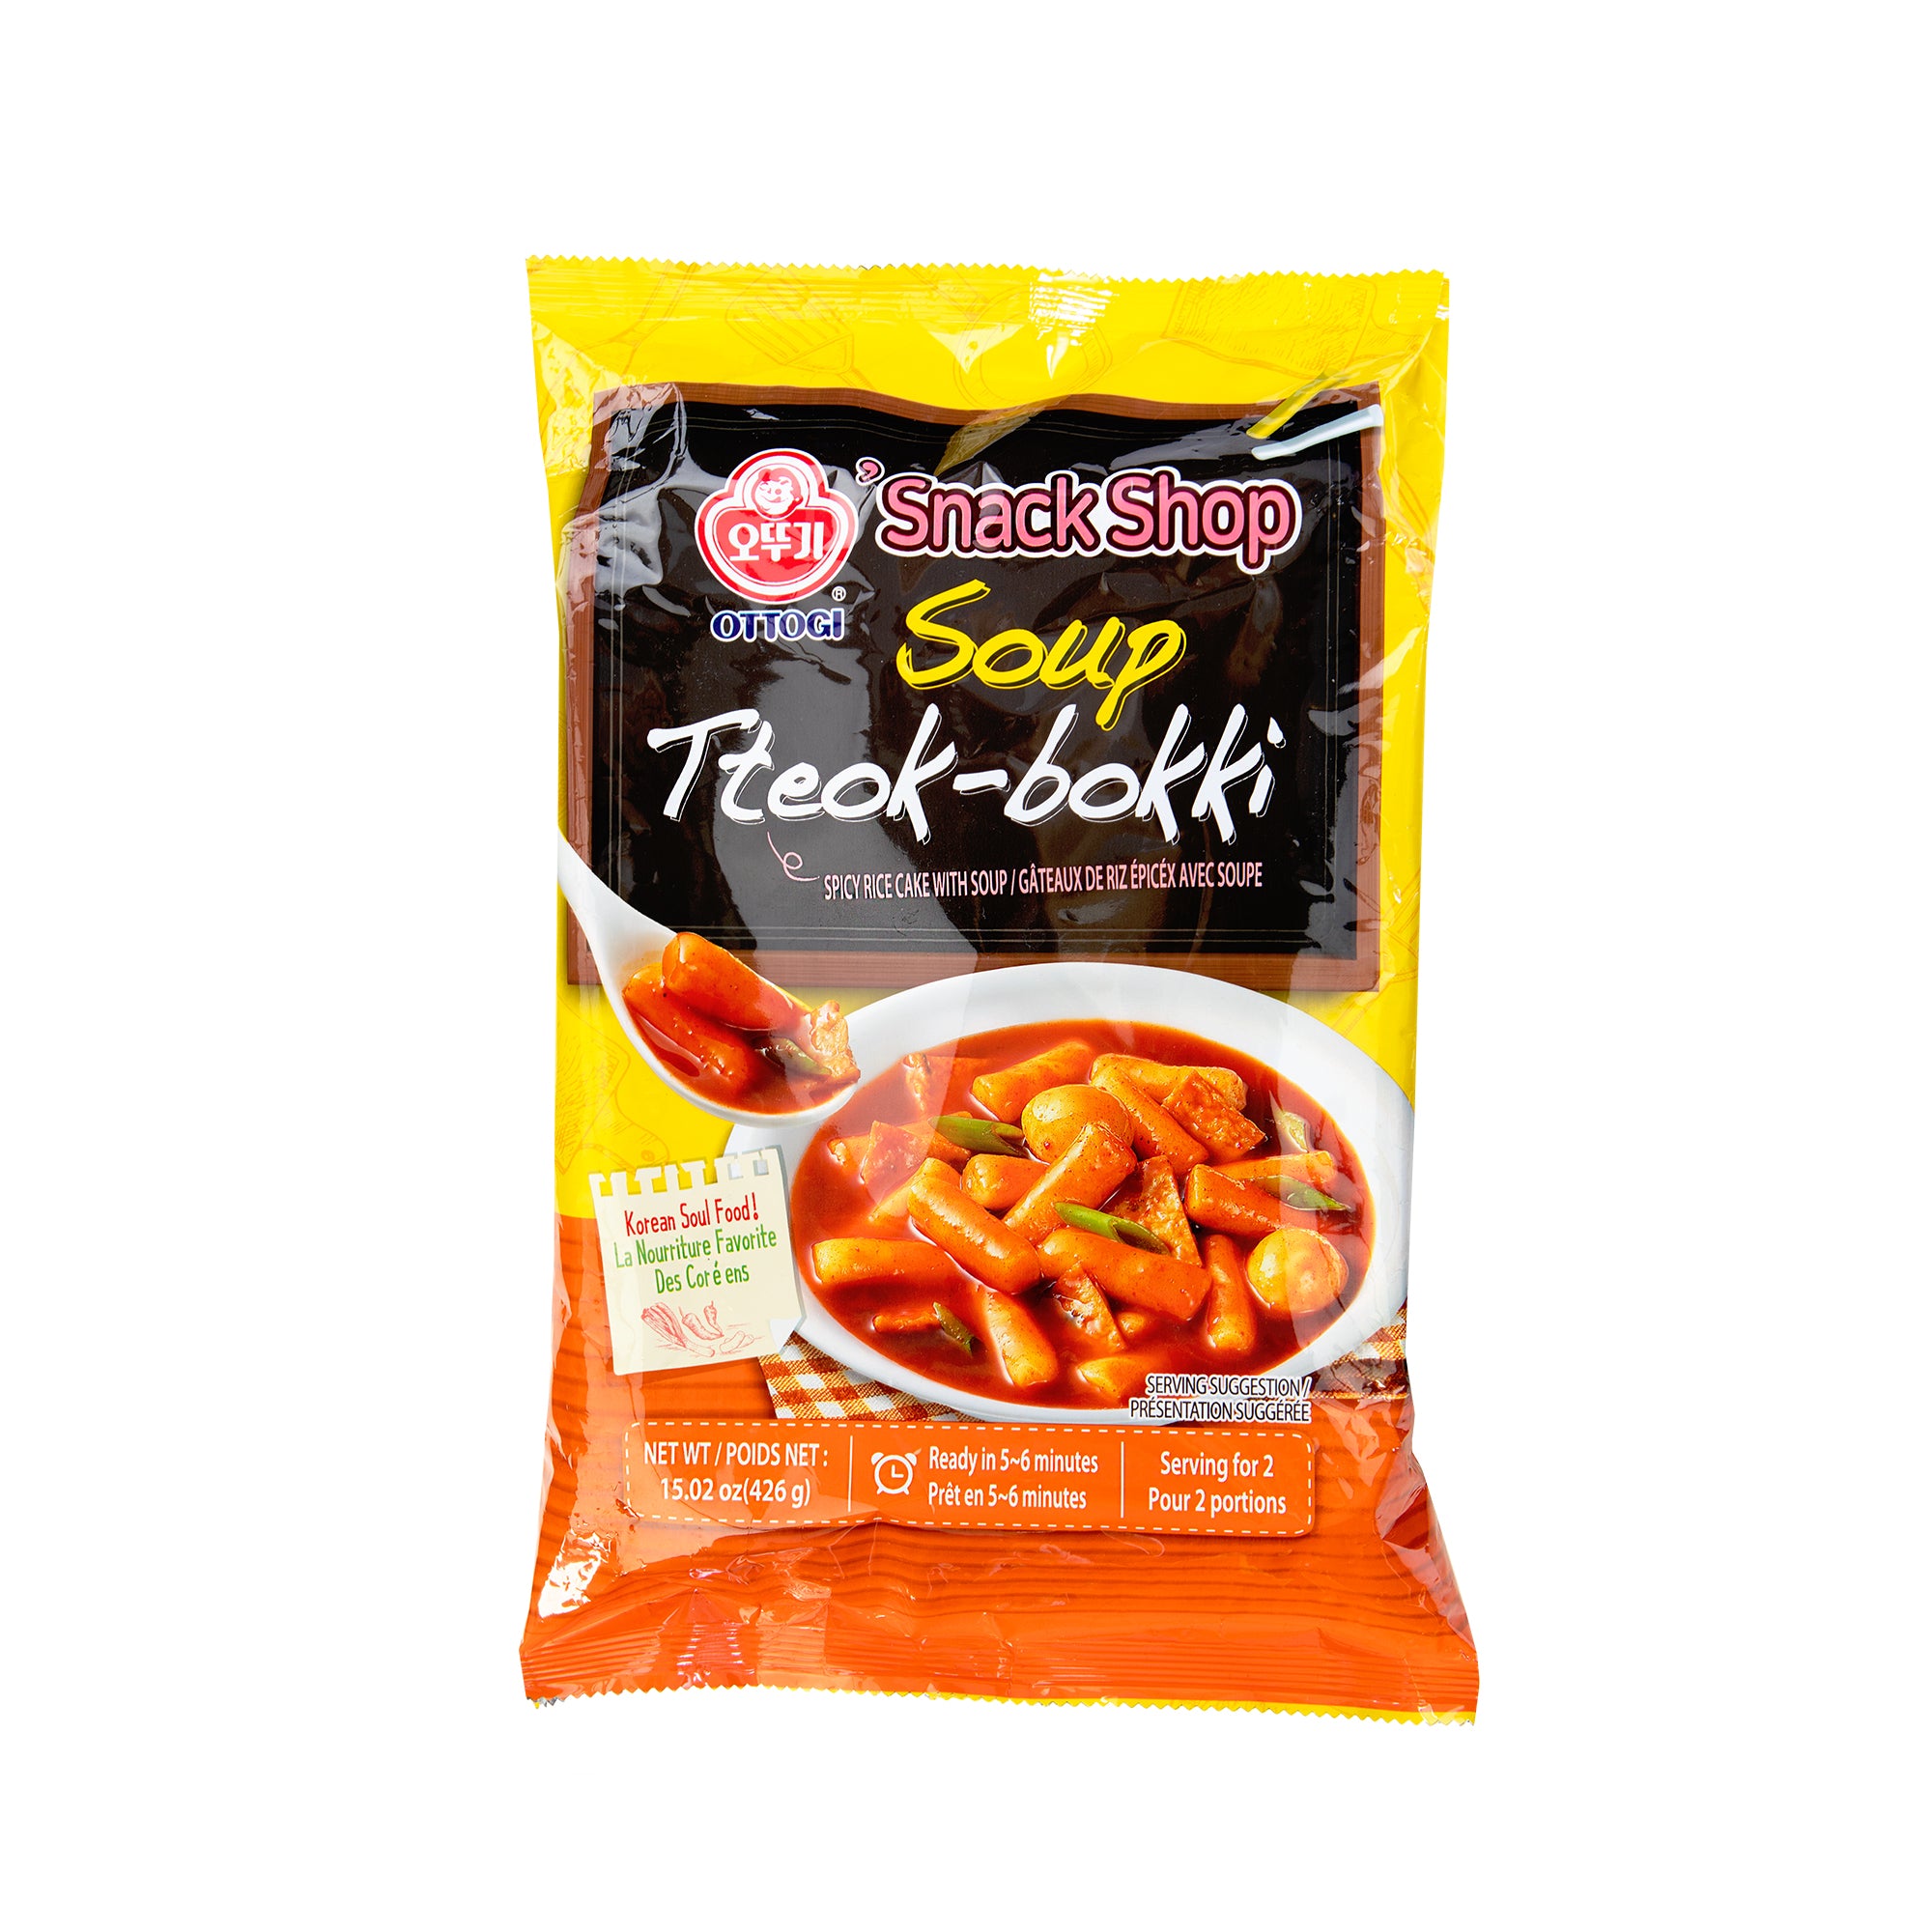 Tteok-bokki (Spicy Rice Cake) 3-Flavor Set